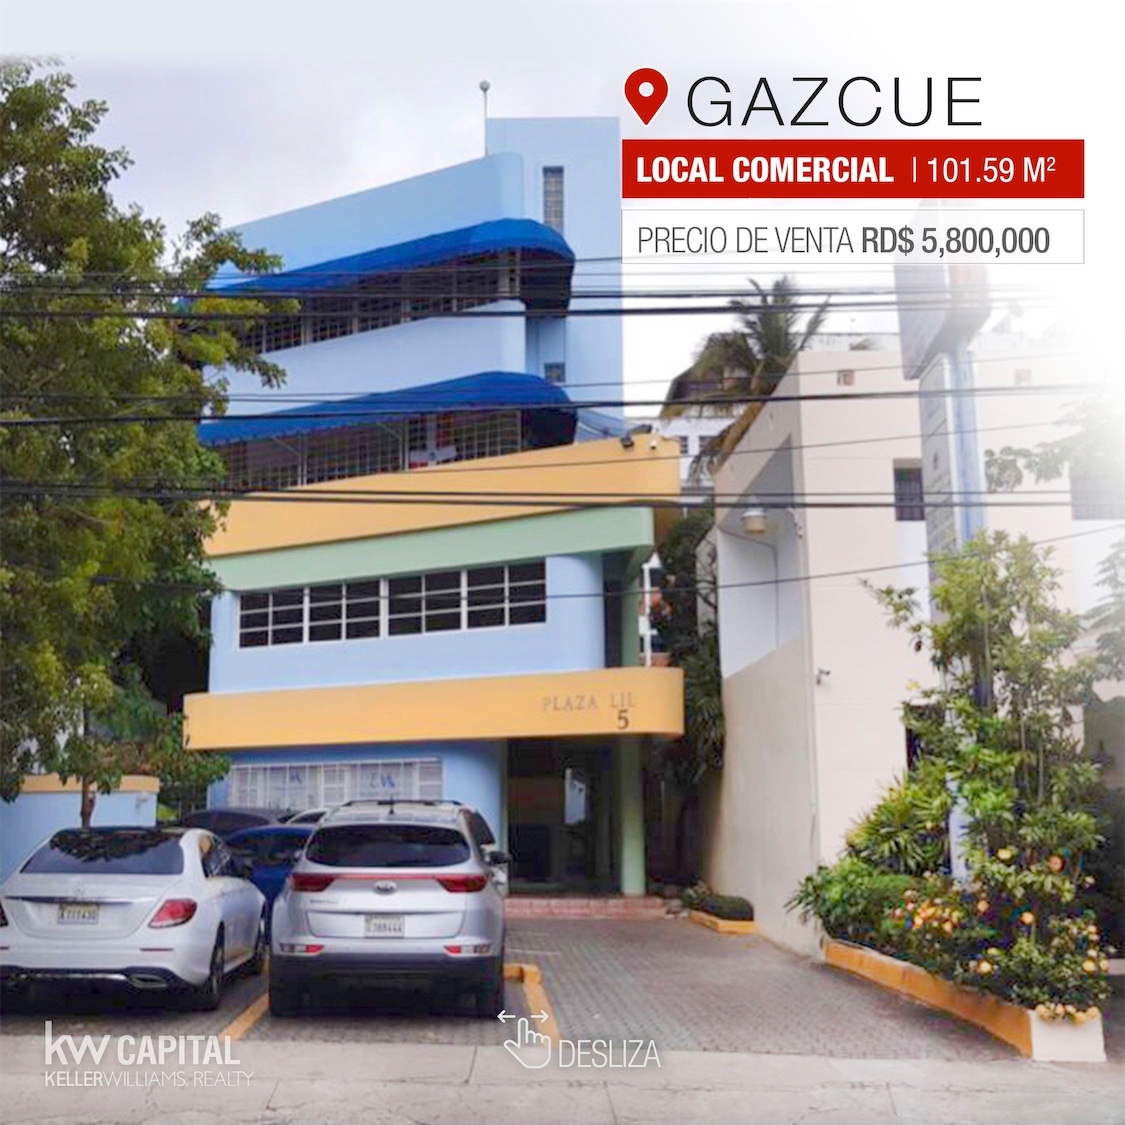 oficinas y locales comerciales - LOCAL COMERCIAL DE OPORTUNIDAD EN GAZCUE